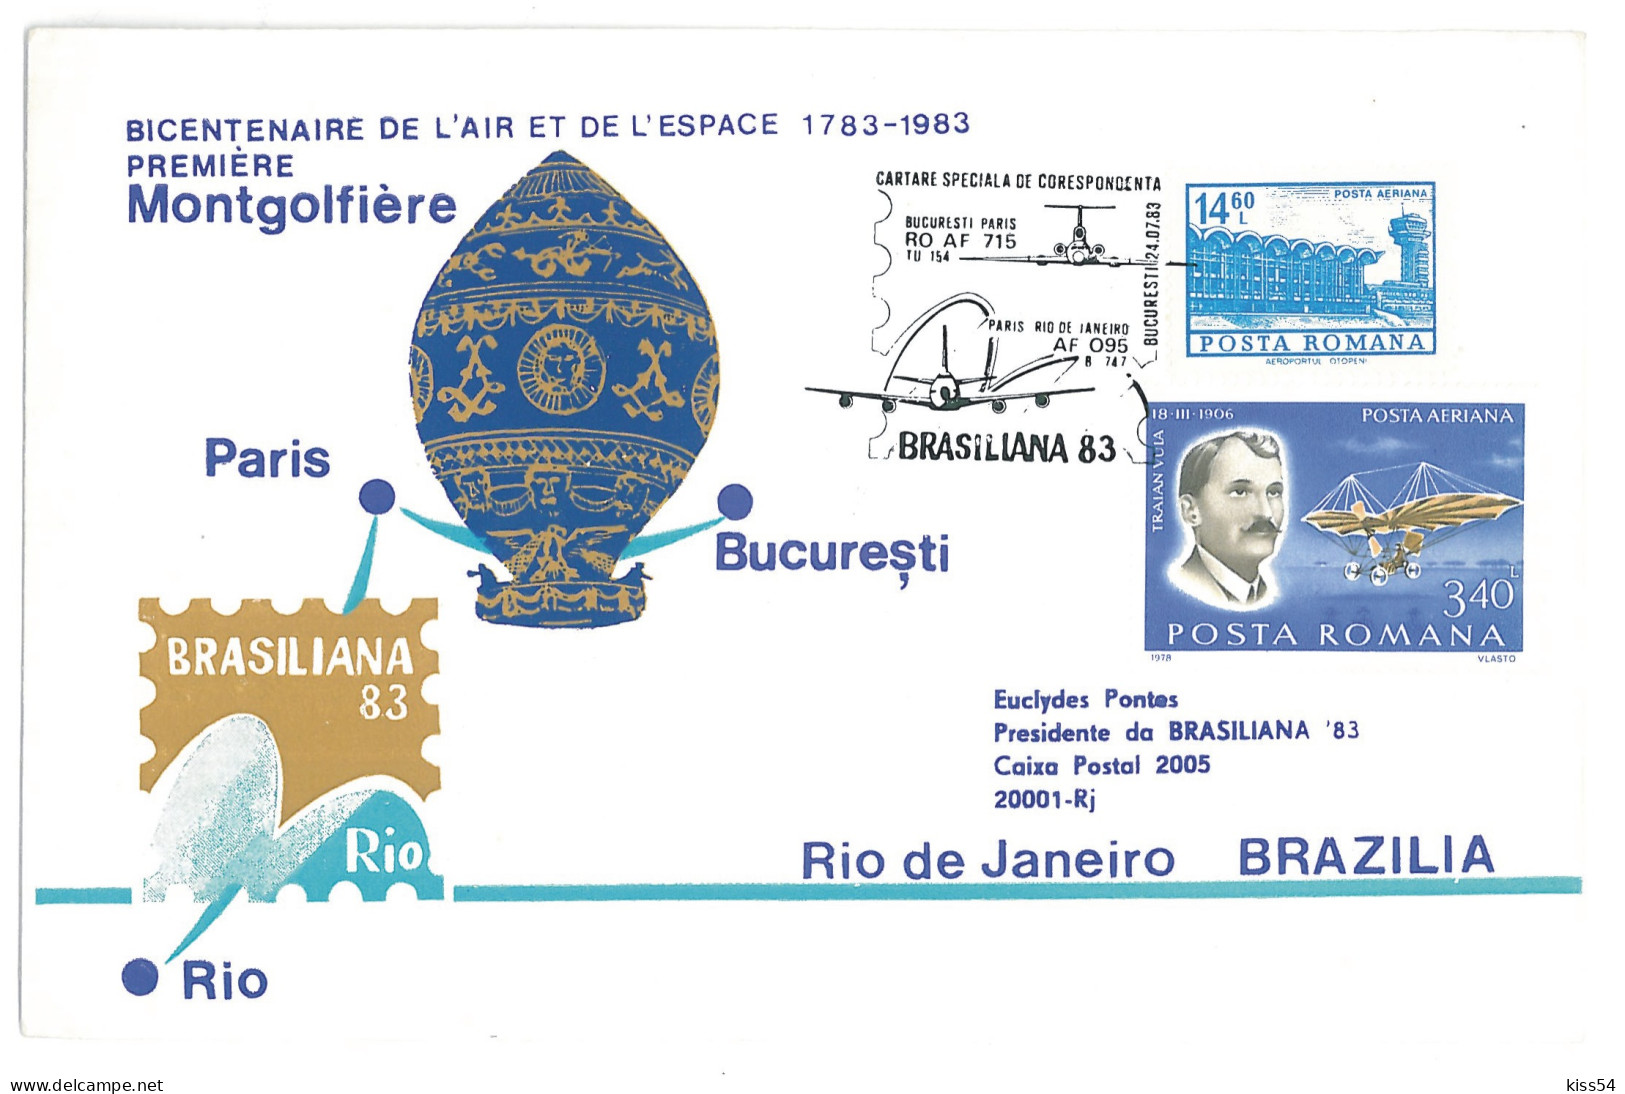 COV 24 - 266-a AIRPLANE, Flight BUCURESTI, PARIS, RIO De JANEIRO - Cover - Used - 1983 - Briefe U. Dokumente